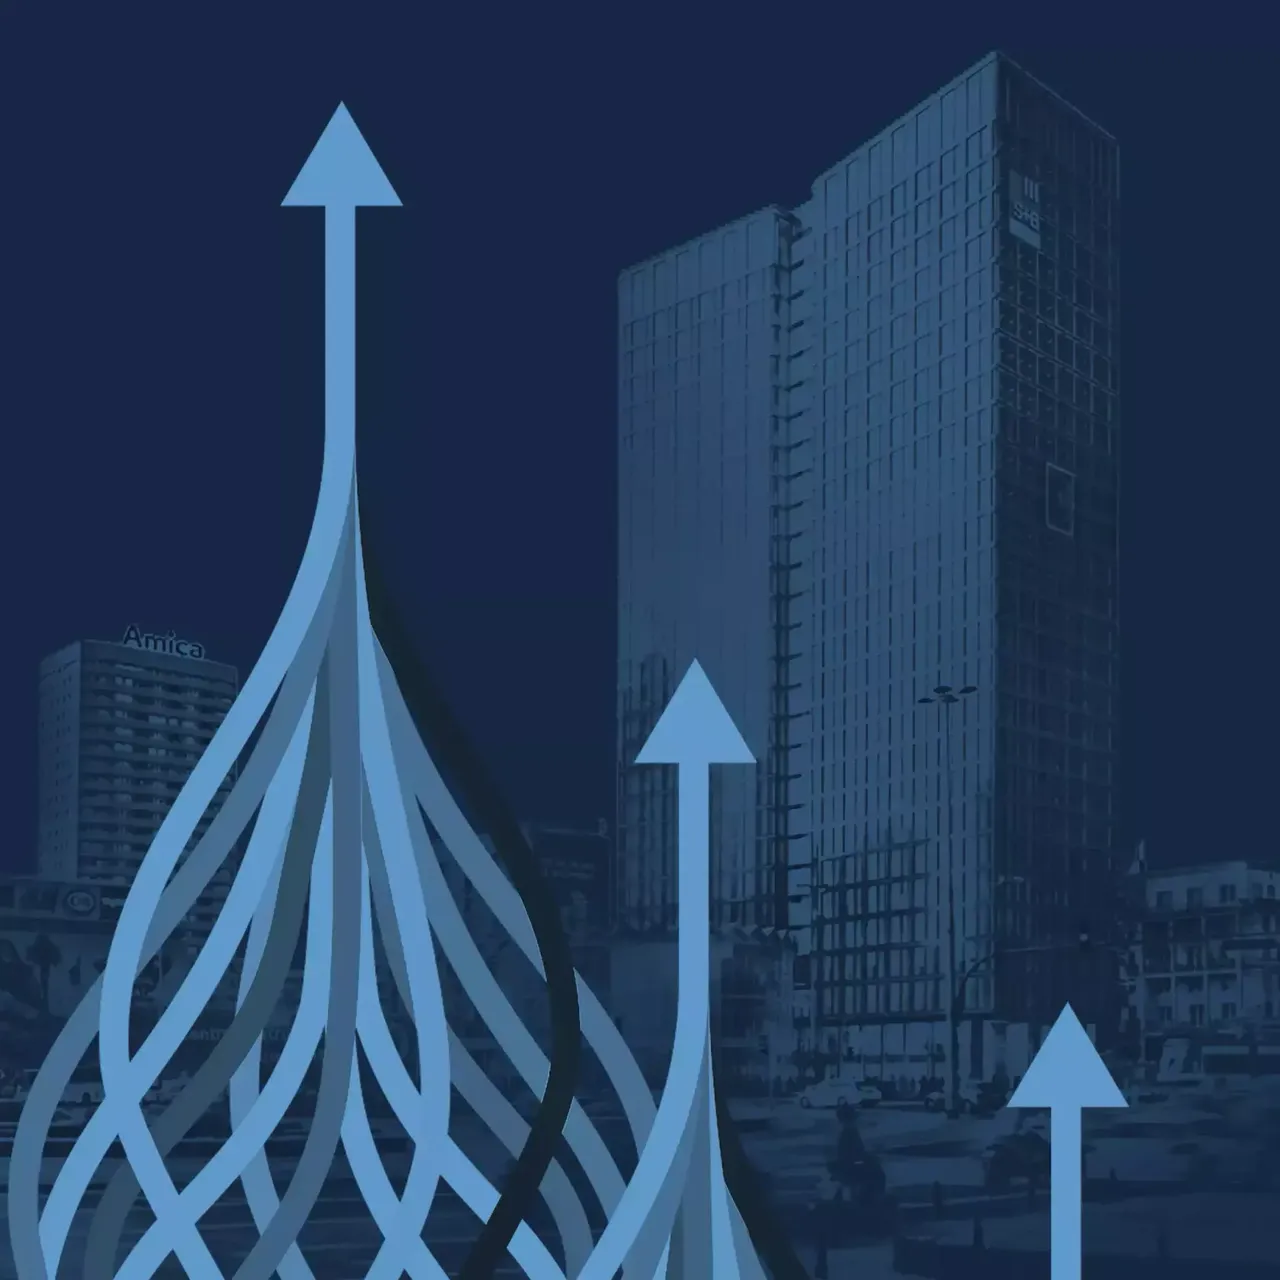 Eine blaue Grafik, die einen unbegrenzten Anlagehorizont darstellt